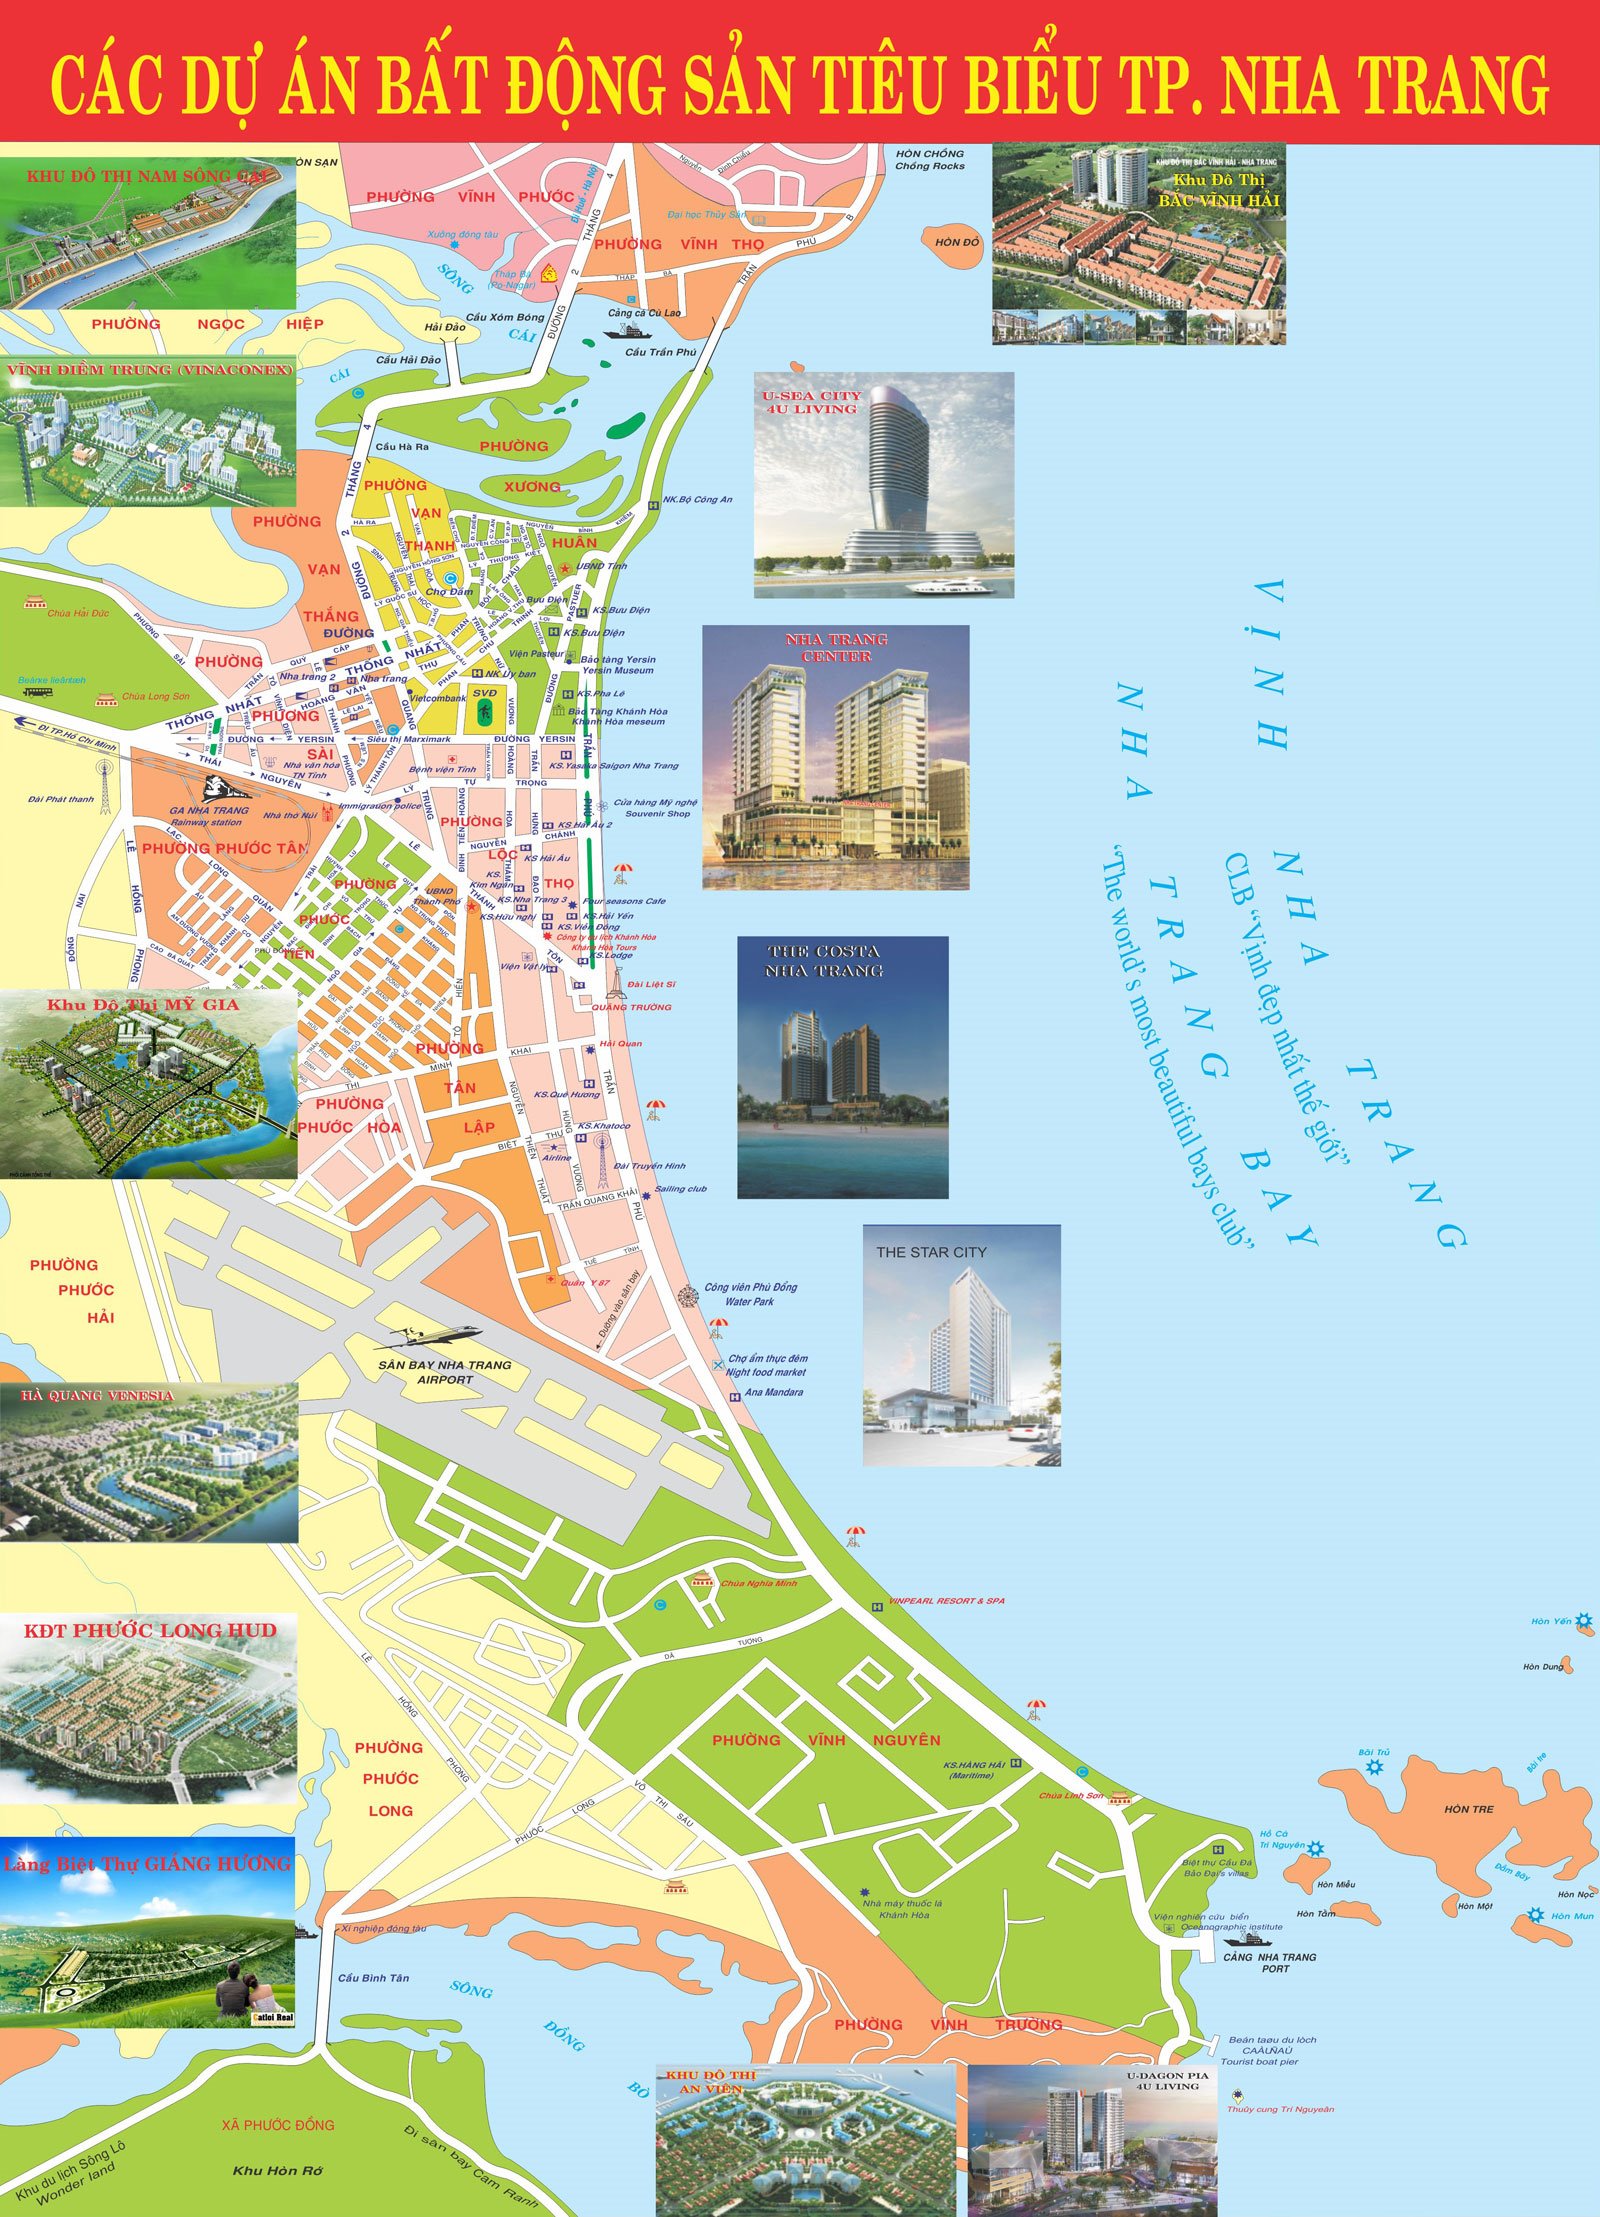 Bạn đang tìm kiếm bản đồ Nha Trang mới nhất không?Chào mừng đến với suất miễn phí của chúng tôi bao gồm bản đồ phố, nơi tham quan và cơ sở dịch vụ. Khám phá thành phố nổi tiếng này với tấm suất miễn phí của chúng tôi.